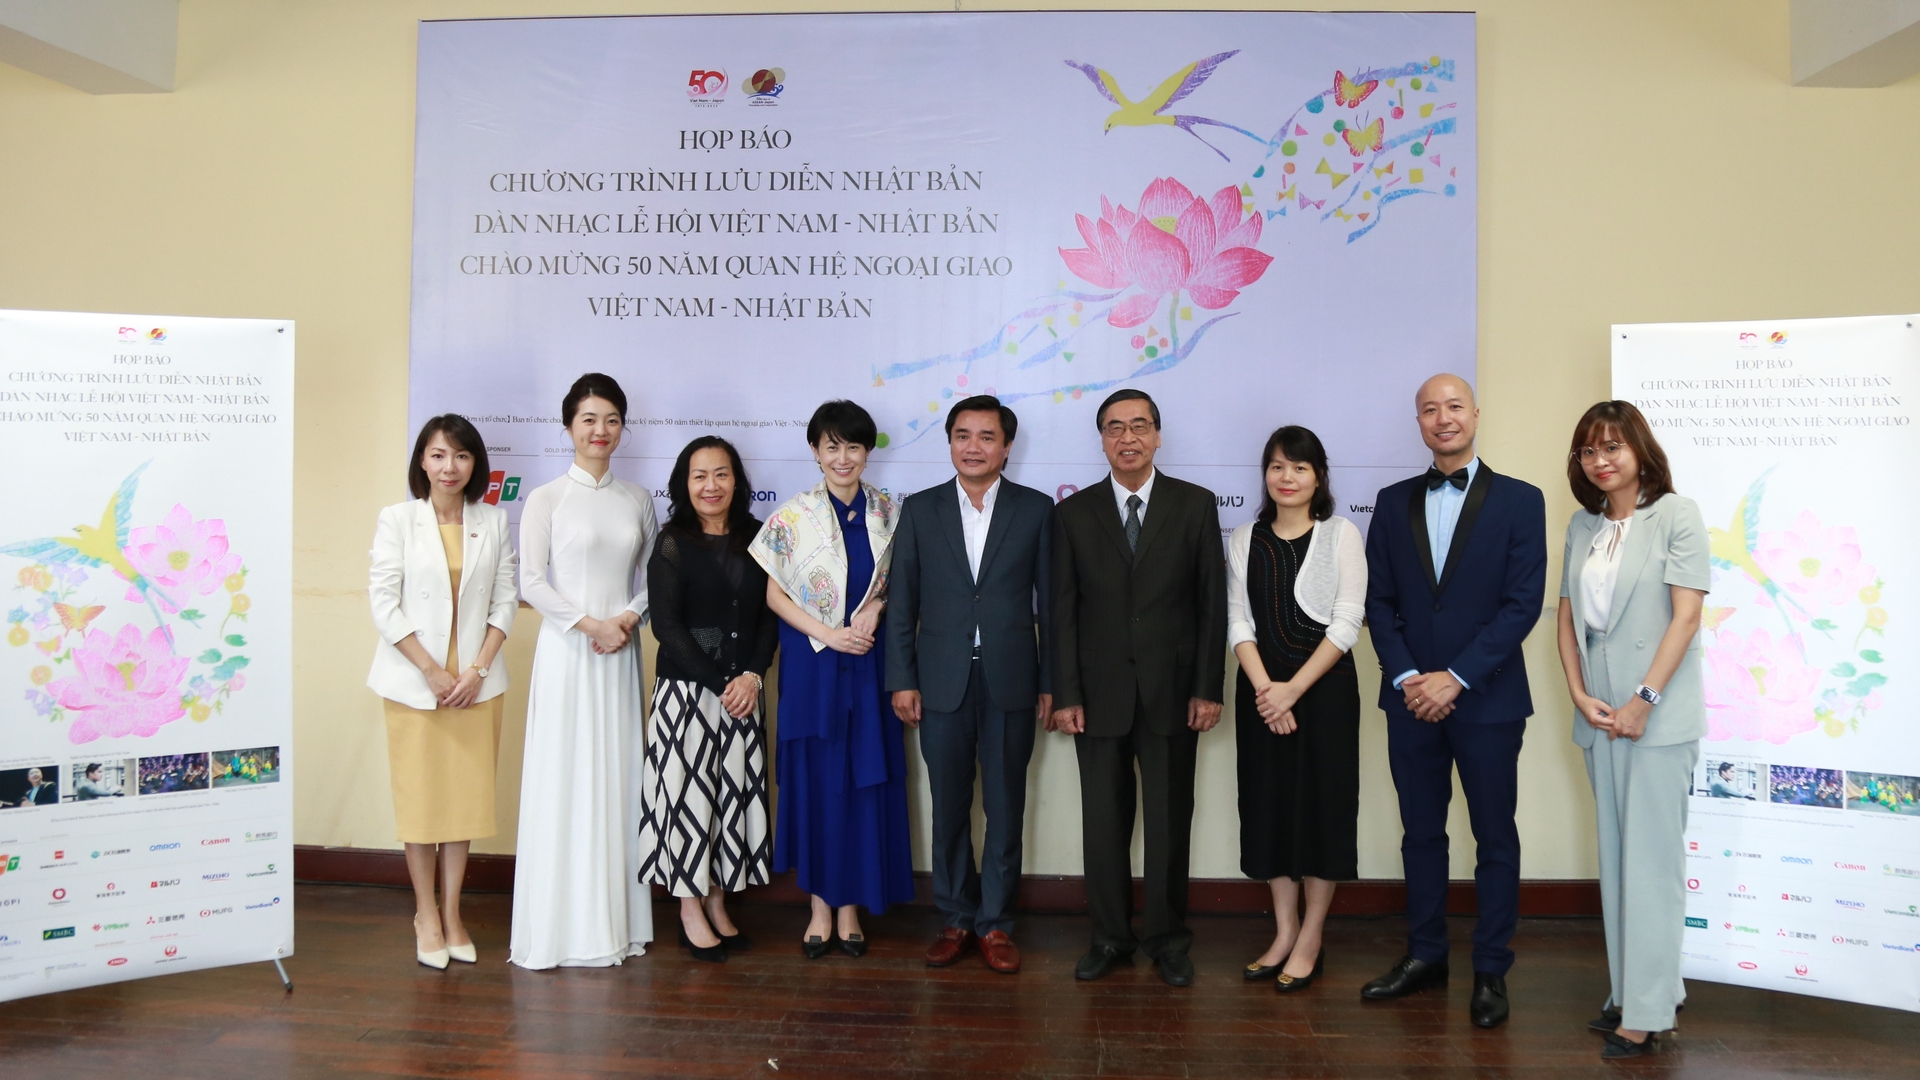 Dàn nhạc giao hưởng lễ hội Việt - Nhật với 60 nghệ sĩ sẽ có buổi lưu diễn tại 'Đất nước mặt trời mọc' vào tháng 10, hướng đến kỷ niệm 50 năm thiết lập ngoại giao Việt Nam - Nhật Bản.  